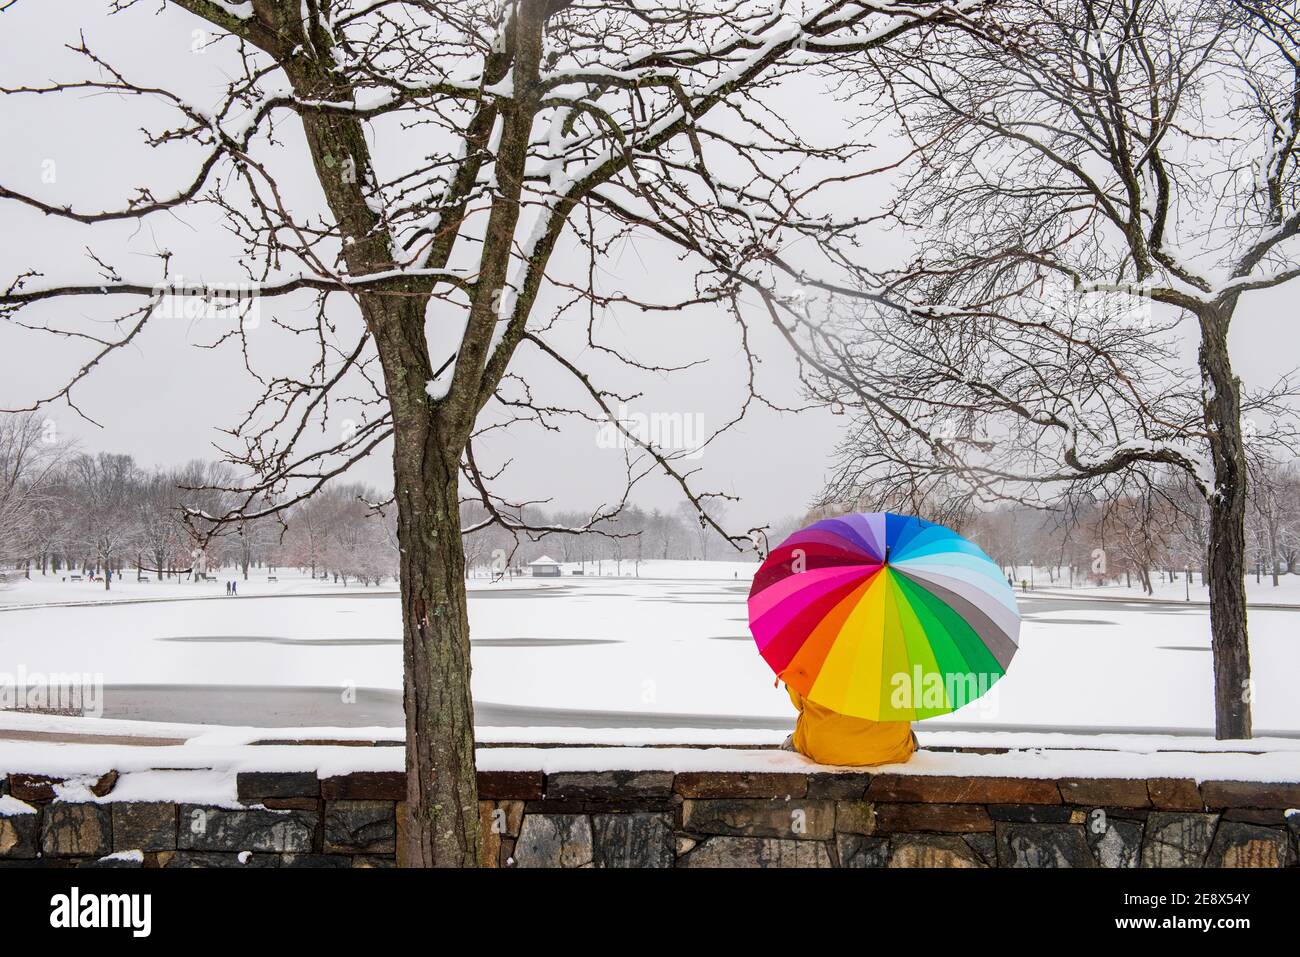 Ein Mann mit einem bunten Regenschirm besucht Constitution Gardens während eines verschneiten Tages in Washington, D.C. Stockfoto